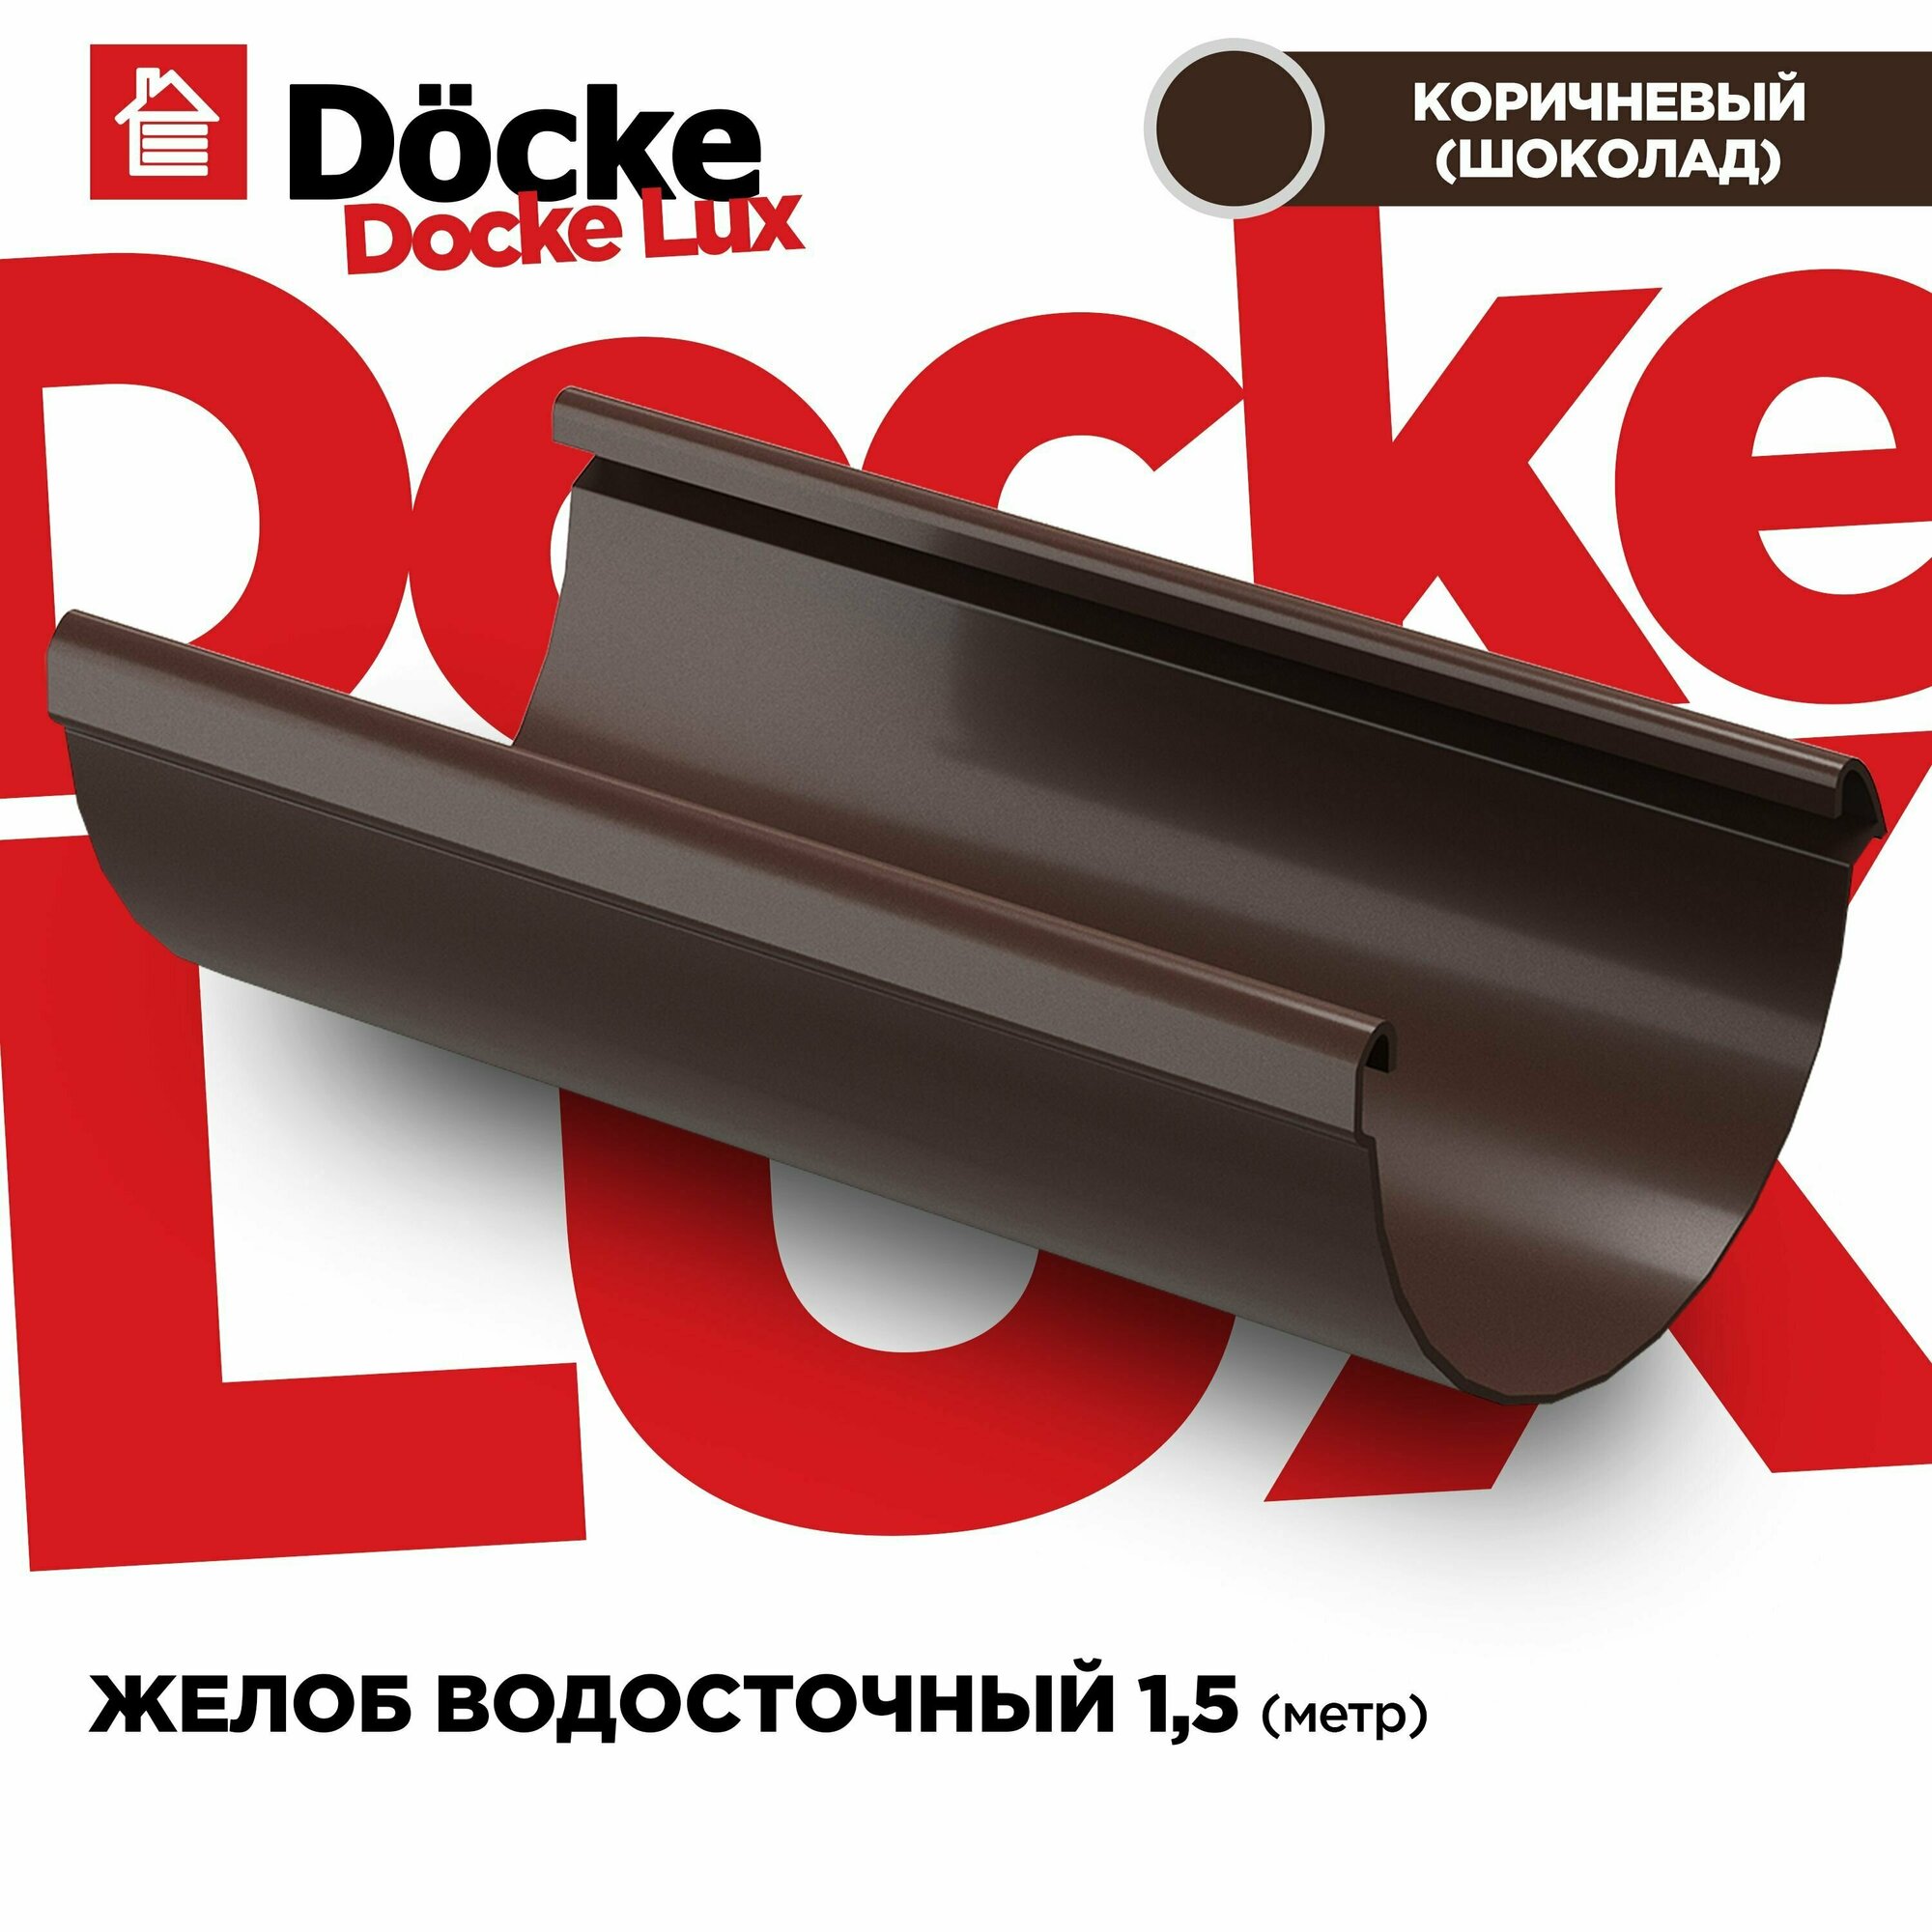 Желоб LUX водосточной системы docke длина 1.5м цвет Каштан (шоколад). 1 штука